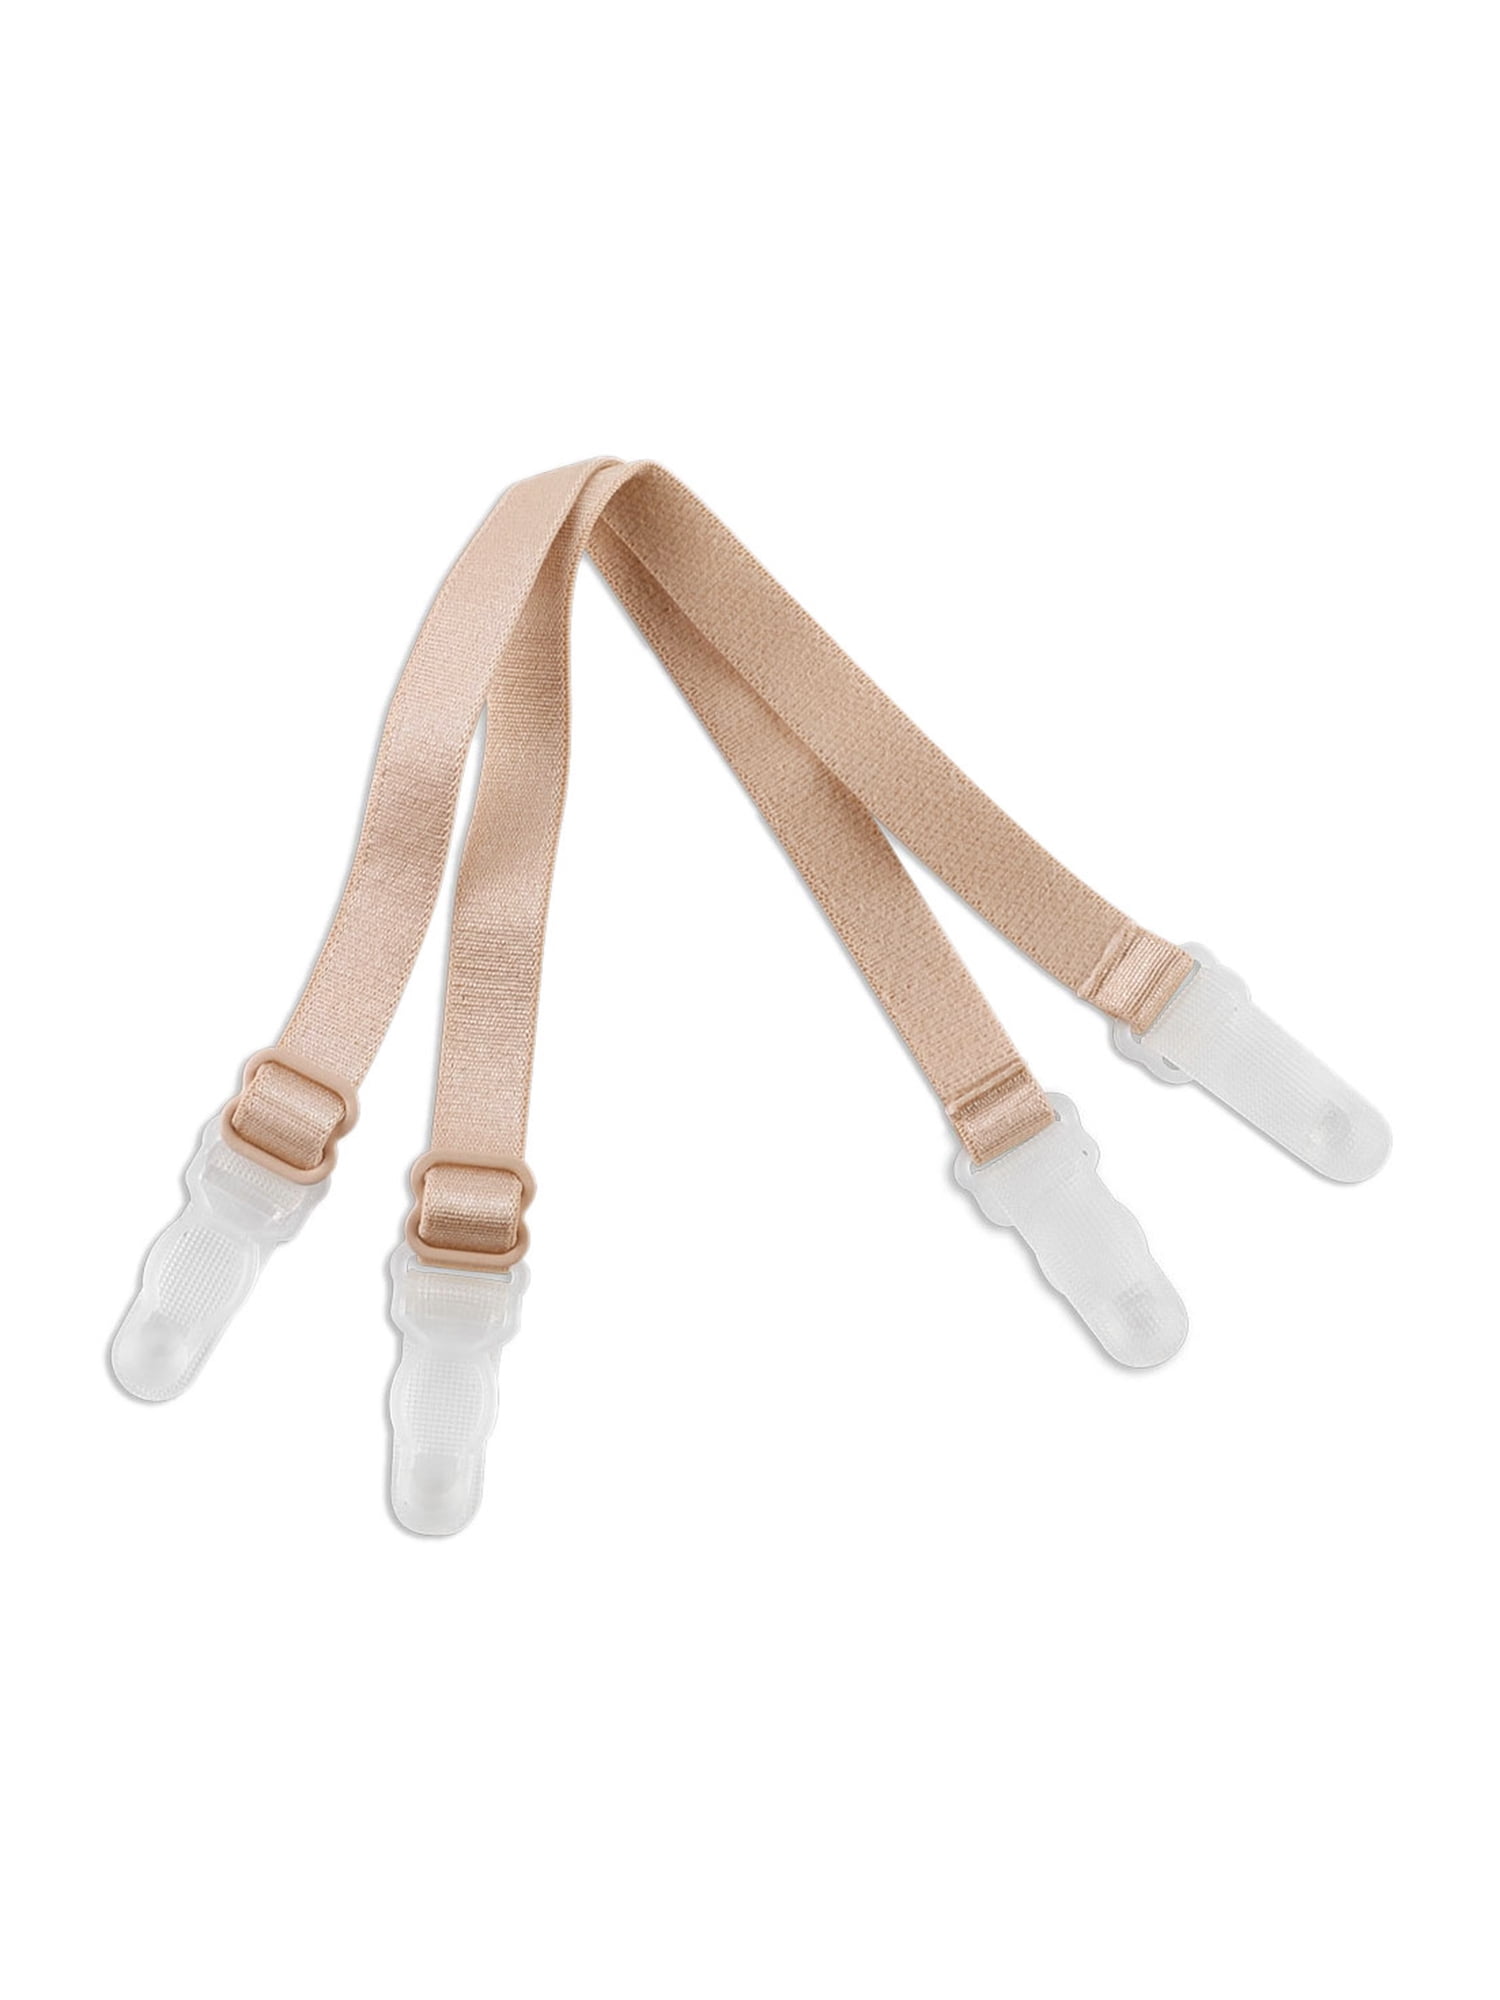 Elastic Non-Slip Bra Shoulder Strap Clips Holder For Women White-2 